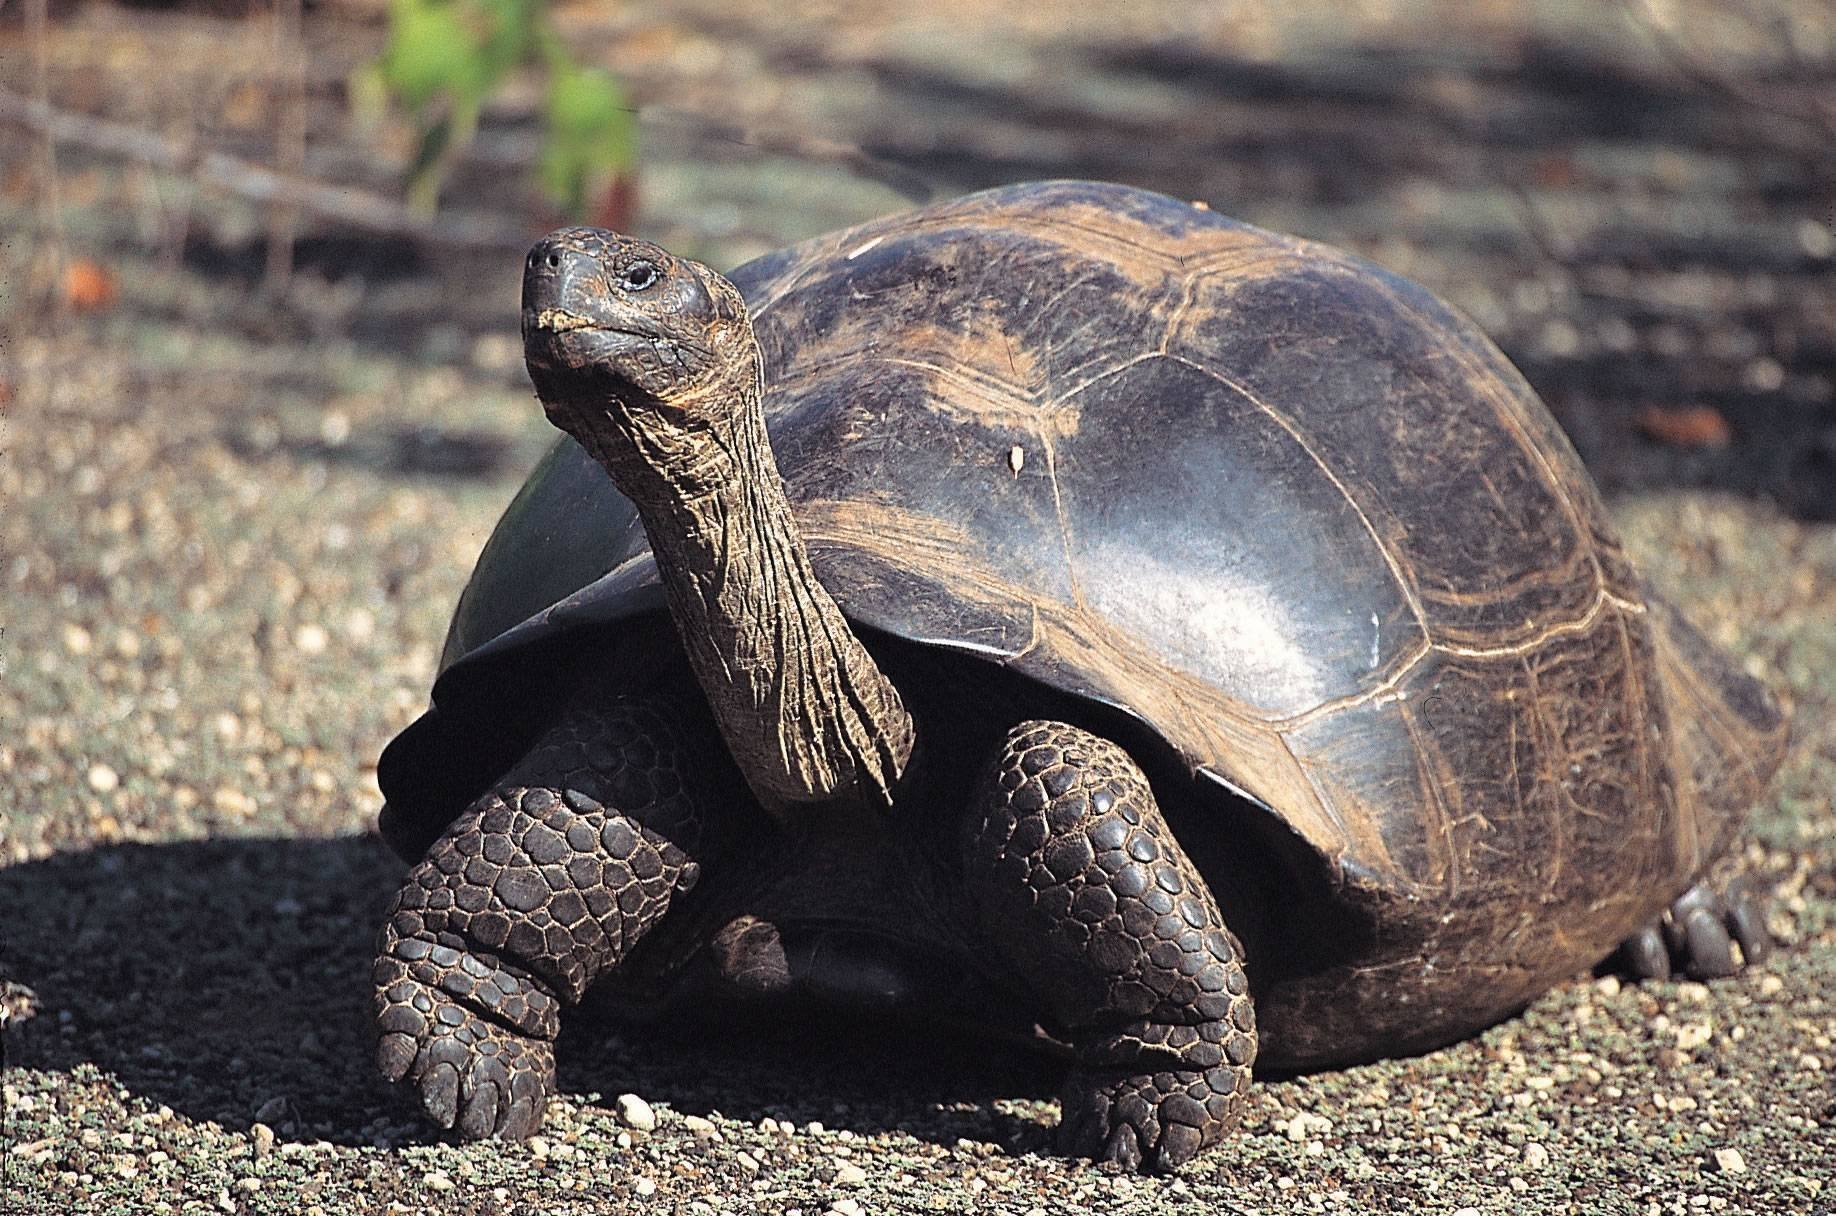 Череп галапагосской черепахи. Галапагосские черепахи Дарвин. Галапагосская черепаха. Галапагос — Эквадор черепахи. Джонатан Галапагосская черепаха.